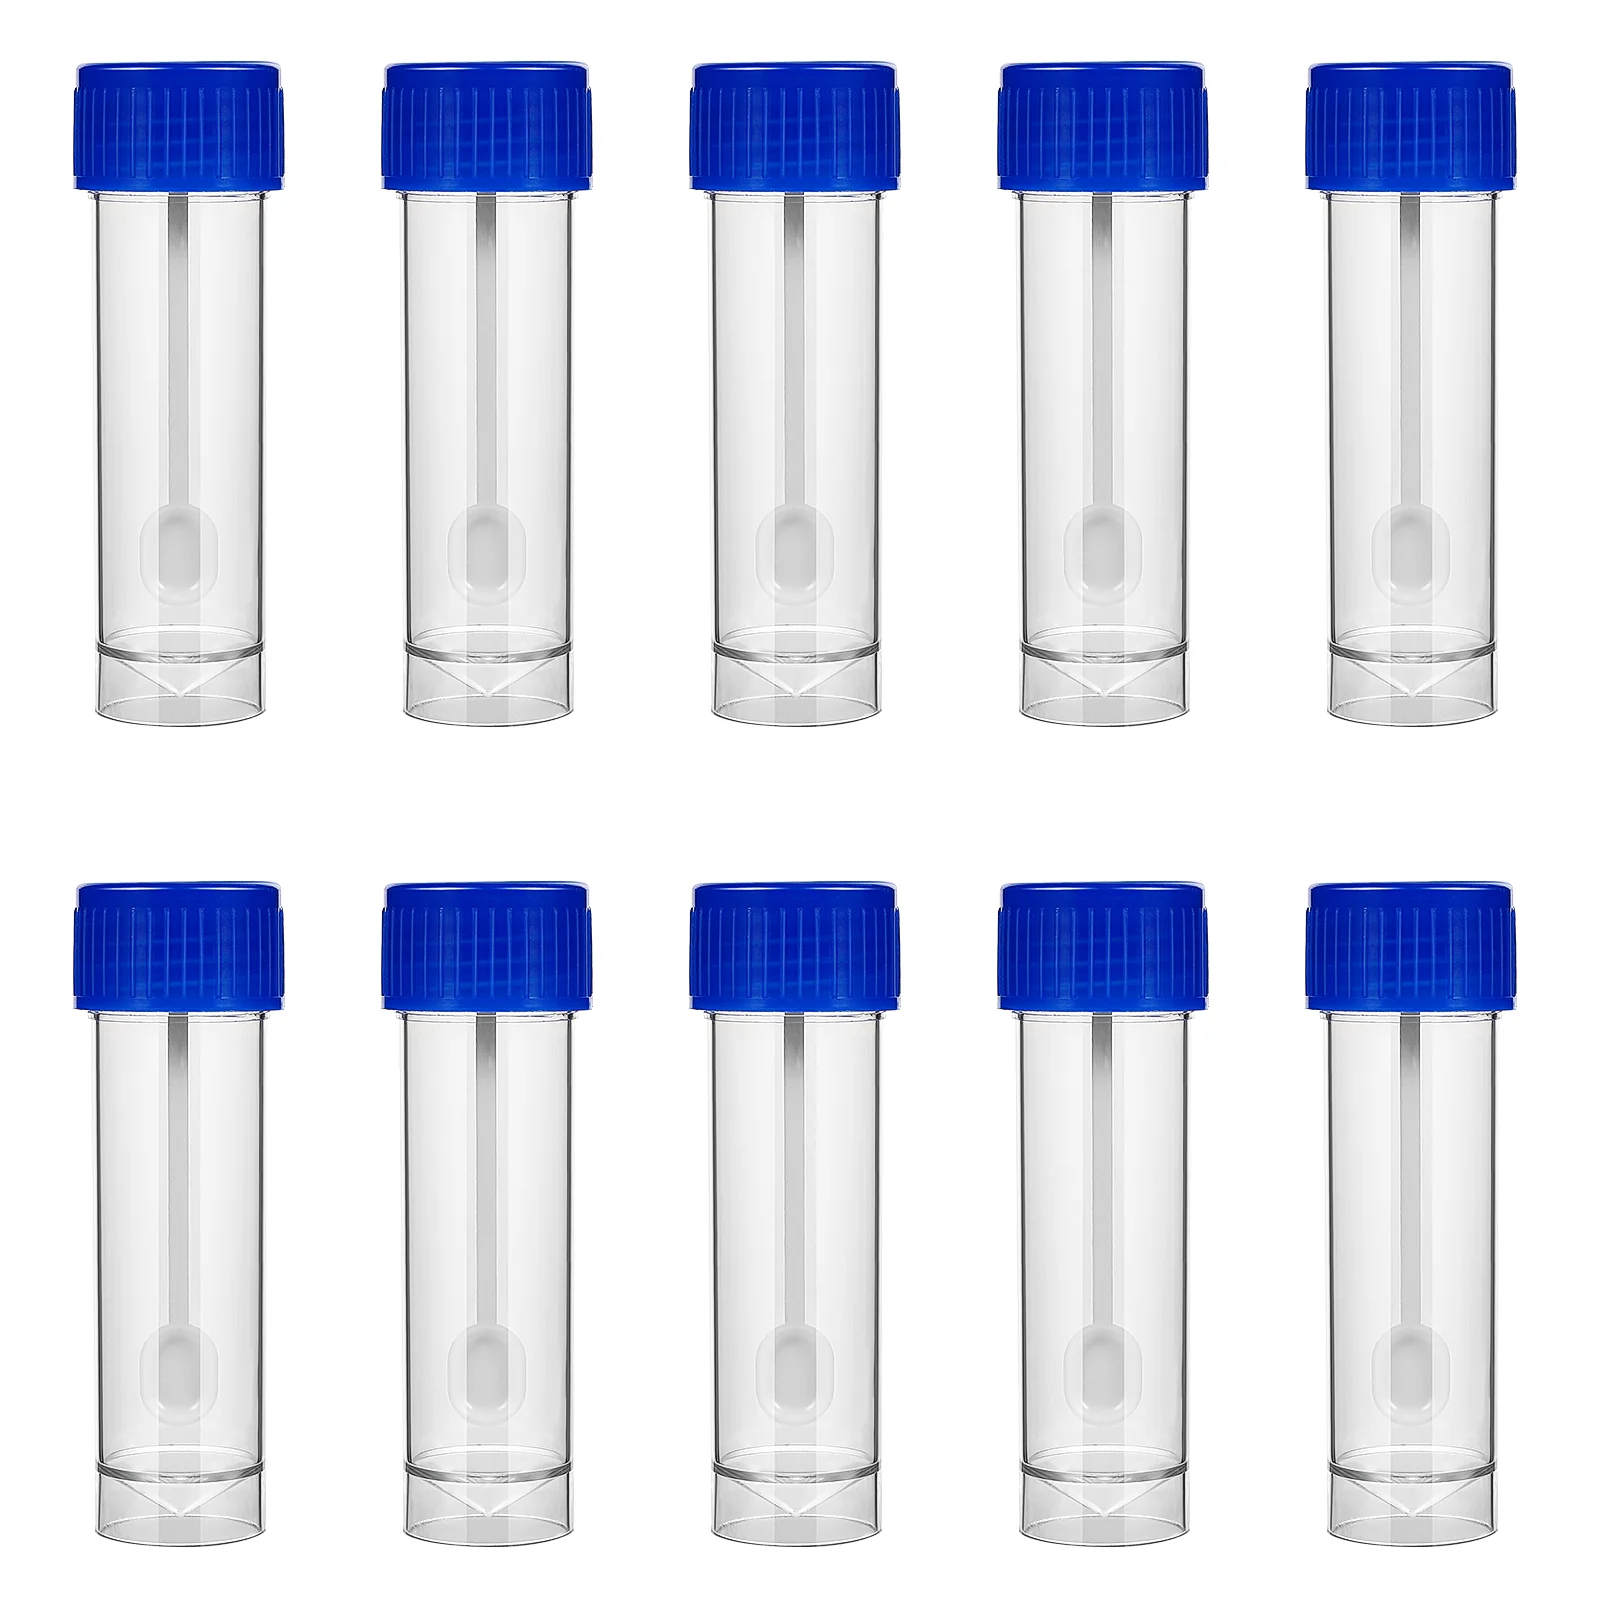 

10 шт., пластиковые чашки для образцов, одноразовые чашки для сбора образцов табуретов, чашки для образцов для тестирования (25-30 мл), контейнер для мочи